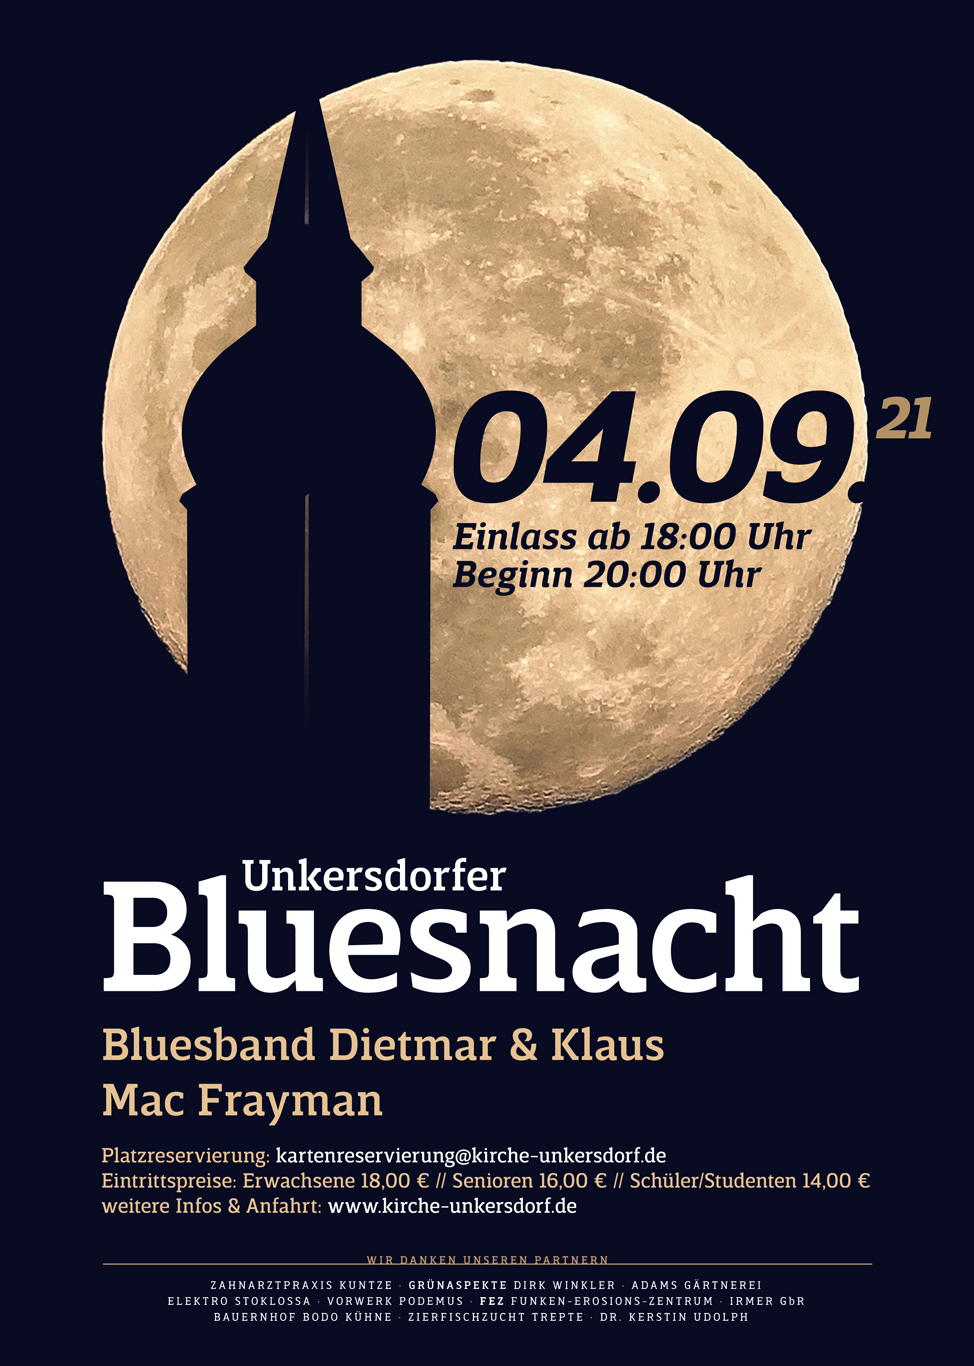 Unkersdorfer Bluesnacht am 04.09.2021